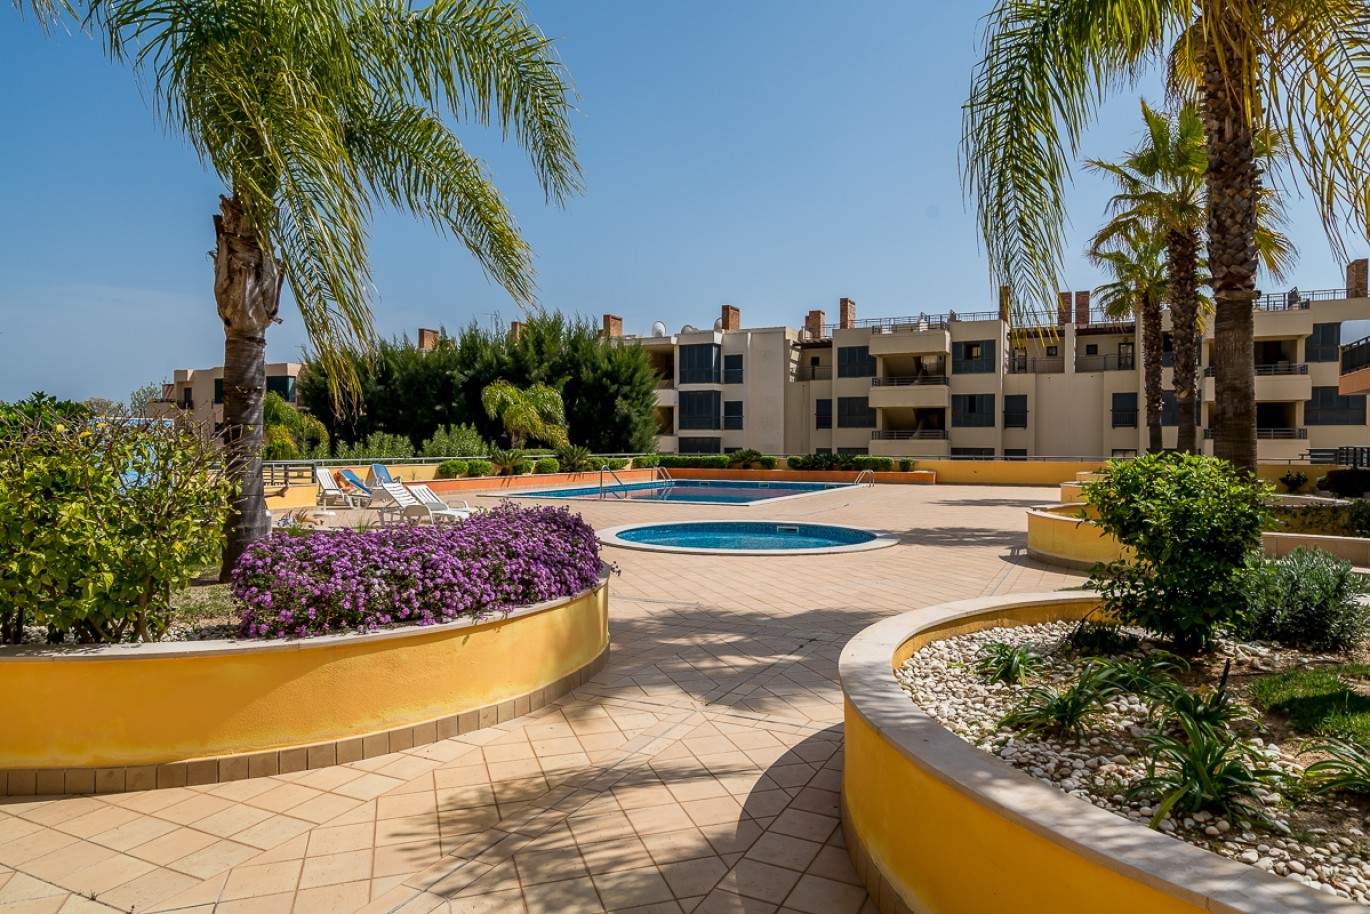 Wohnung zum Verkauf, pool, in der Nähe von Strand und golf, Vilamoura, Algarve, Portugal_78079